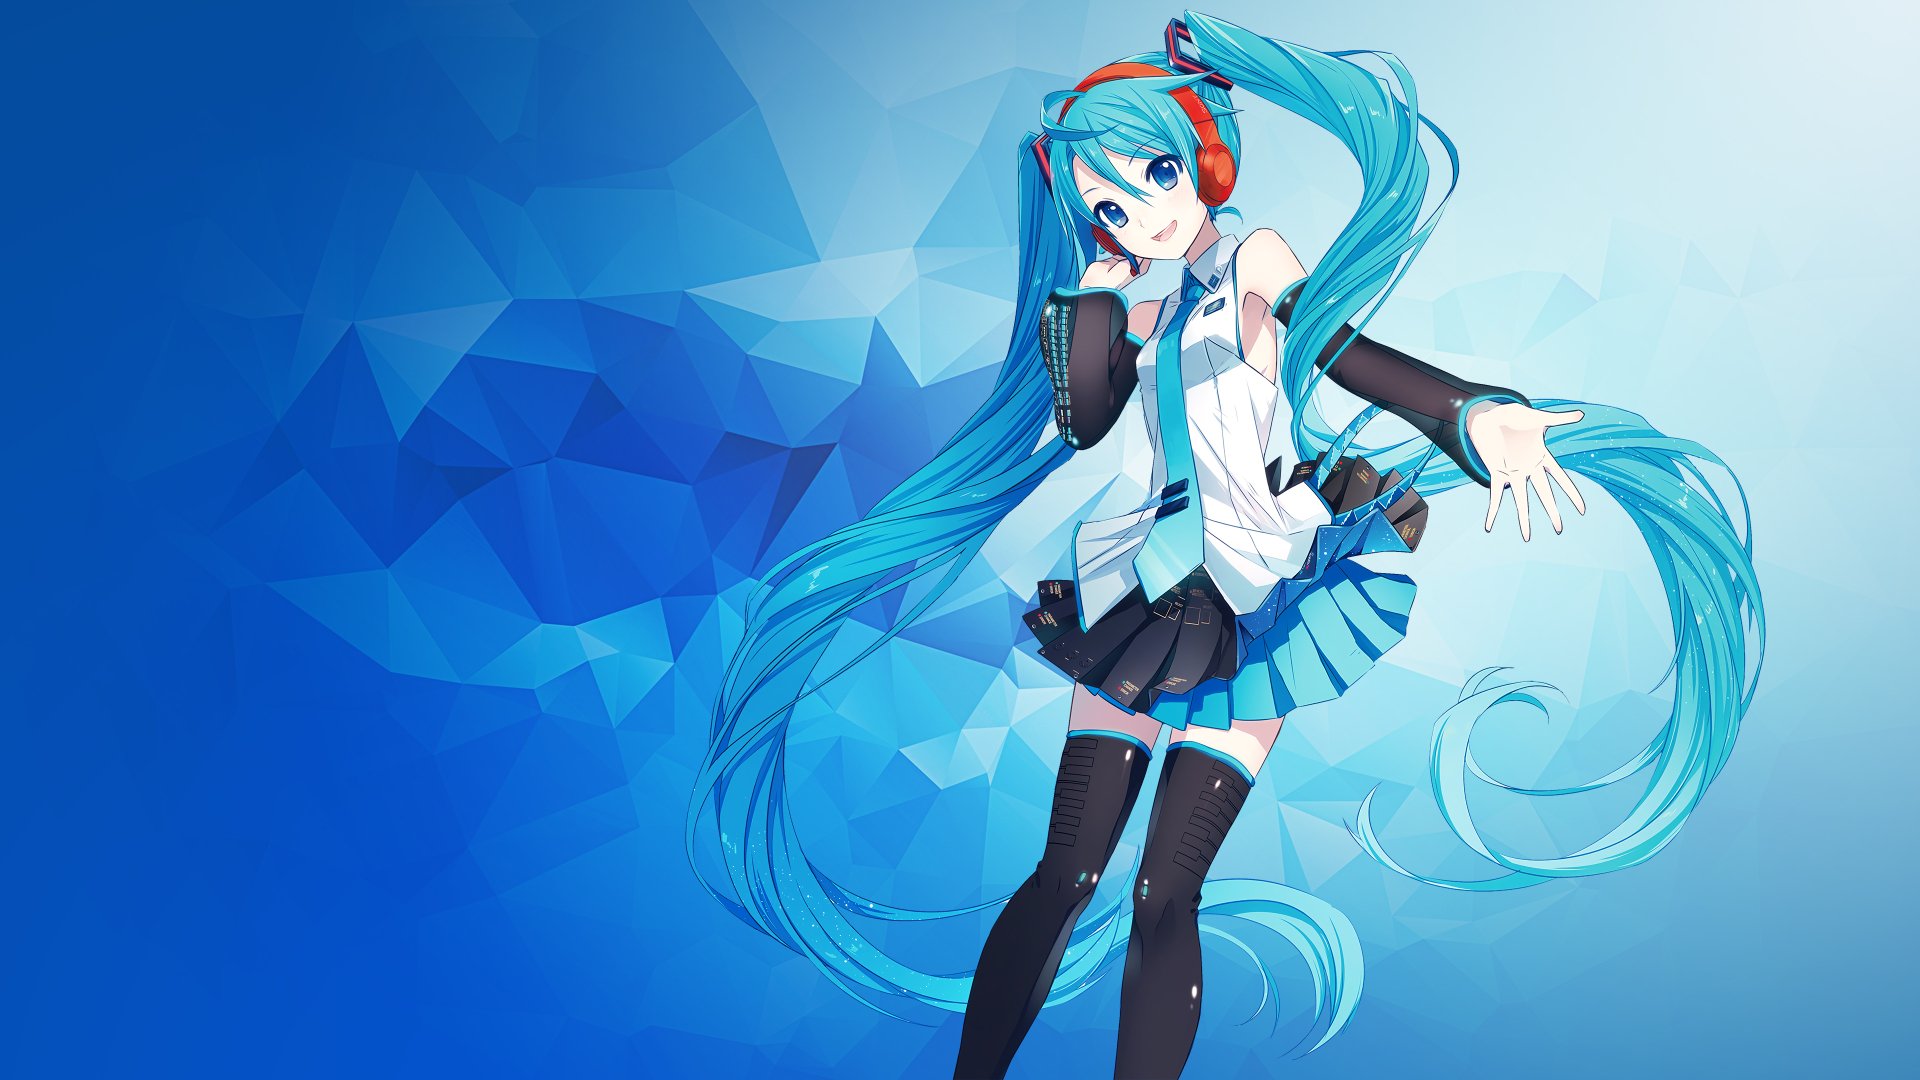 Với Vocaloid, bạn sẽ được khám phá thế giới âm nhạc ảo diệu và đầy sáng tạo. Thông qua bộ công cụ phần mềm được phát triển bởi Yamaha, Vocaloid cho phép bạn tạo ra giọng hát ảo với độ chính xác và chất lượng âm thanh cao. Hãy thưởng thức những bài hát Vocaloid đẹp và sáng tạo nhất.